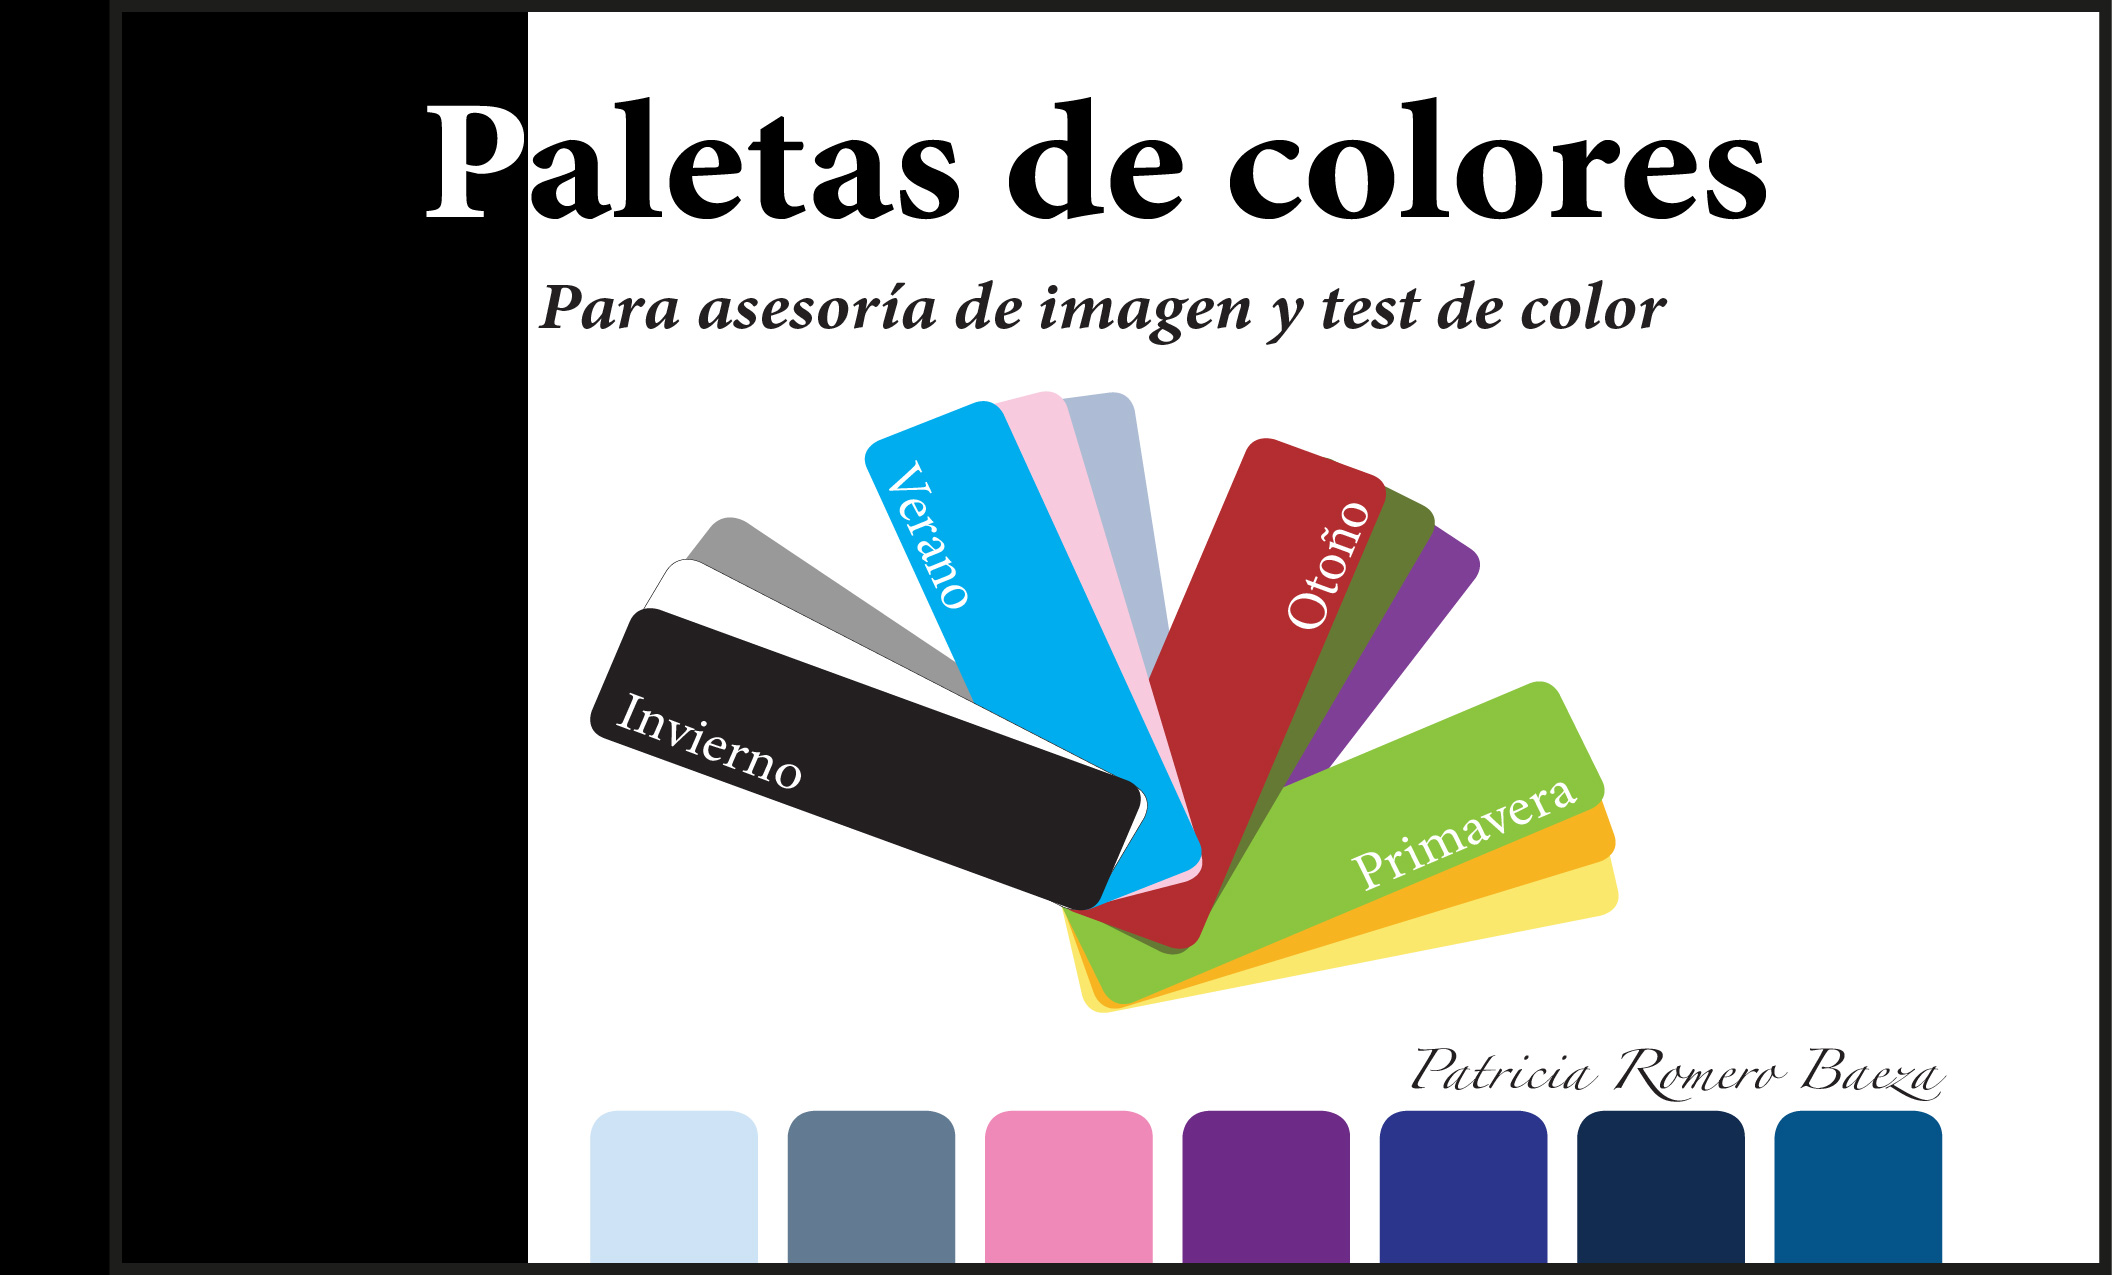 LIBRO COLORIMETRÍA: Paletas de Colores IMPRESO